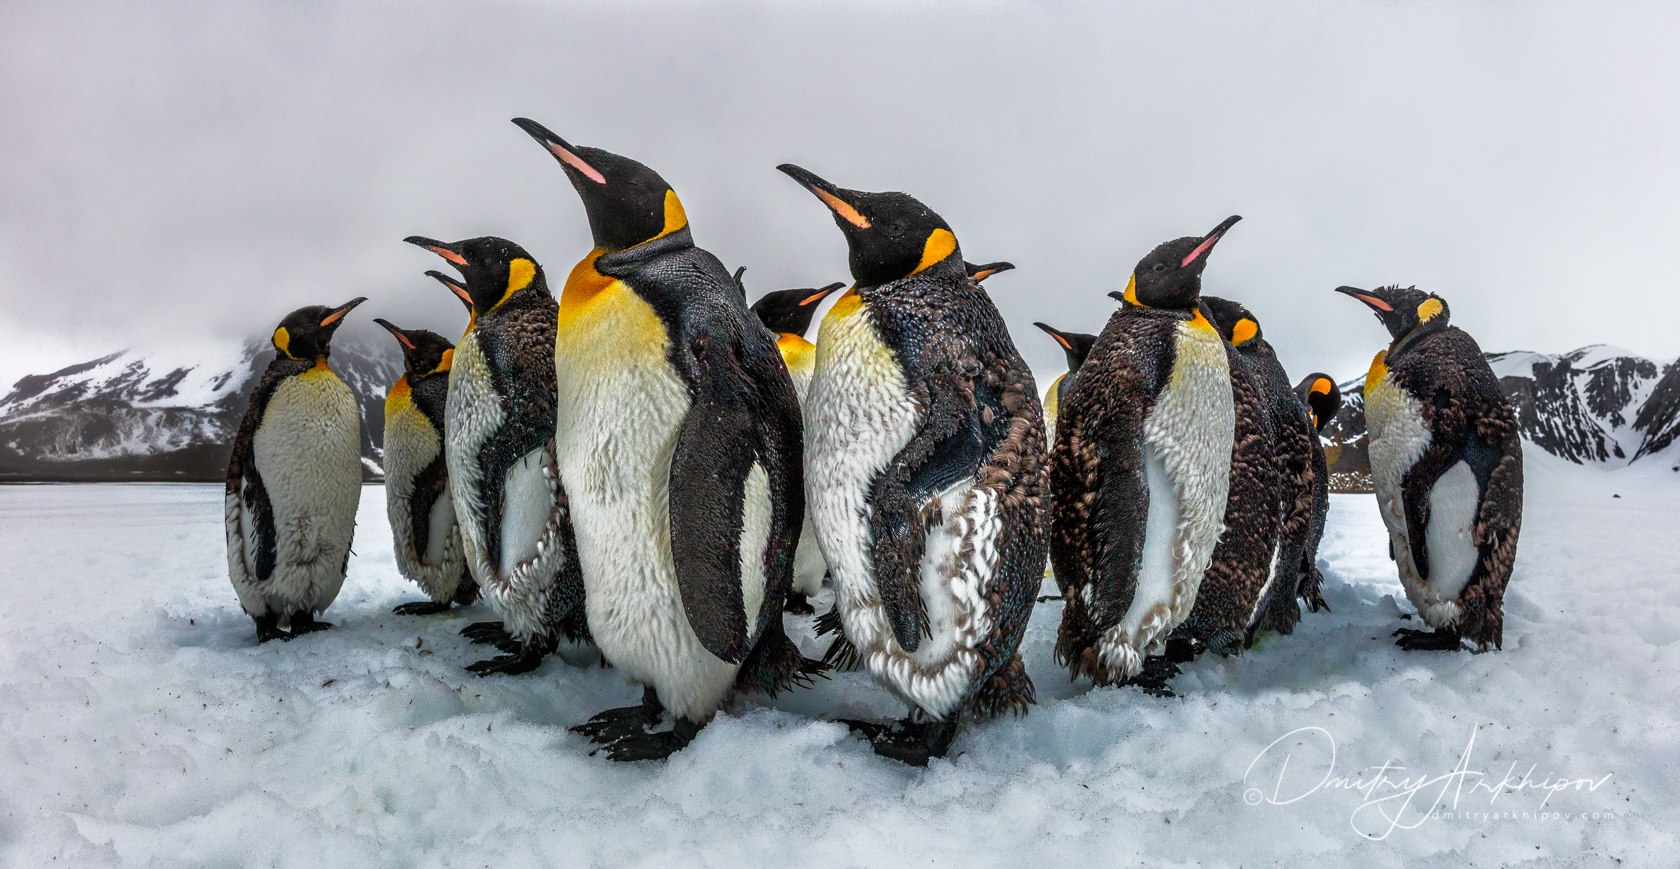 У пингвинов есть перья